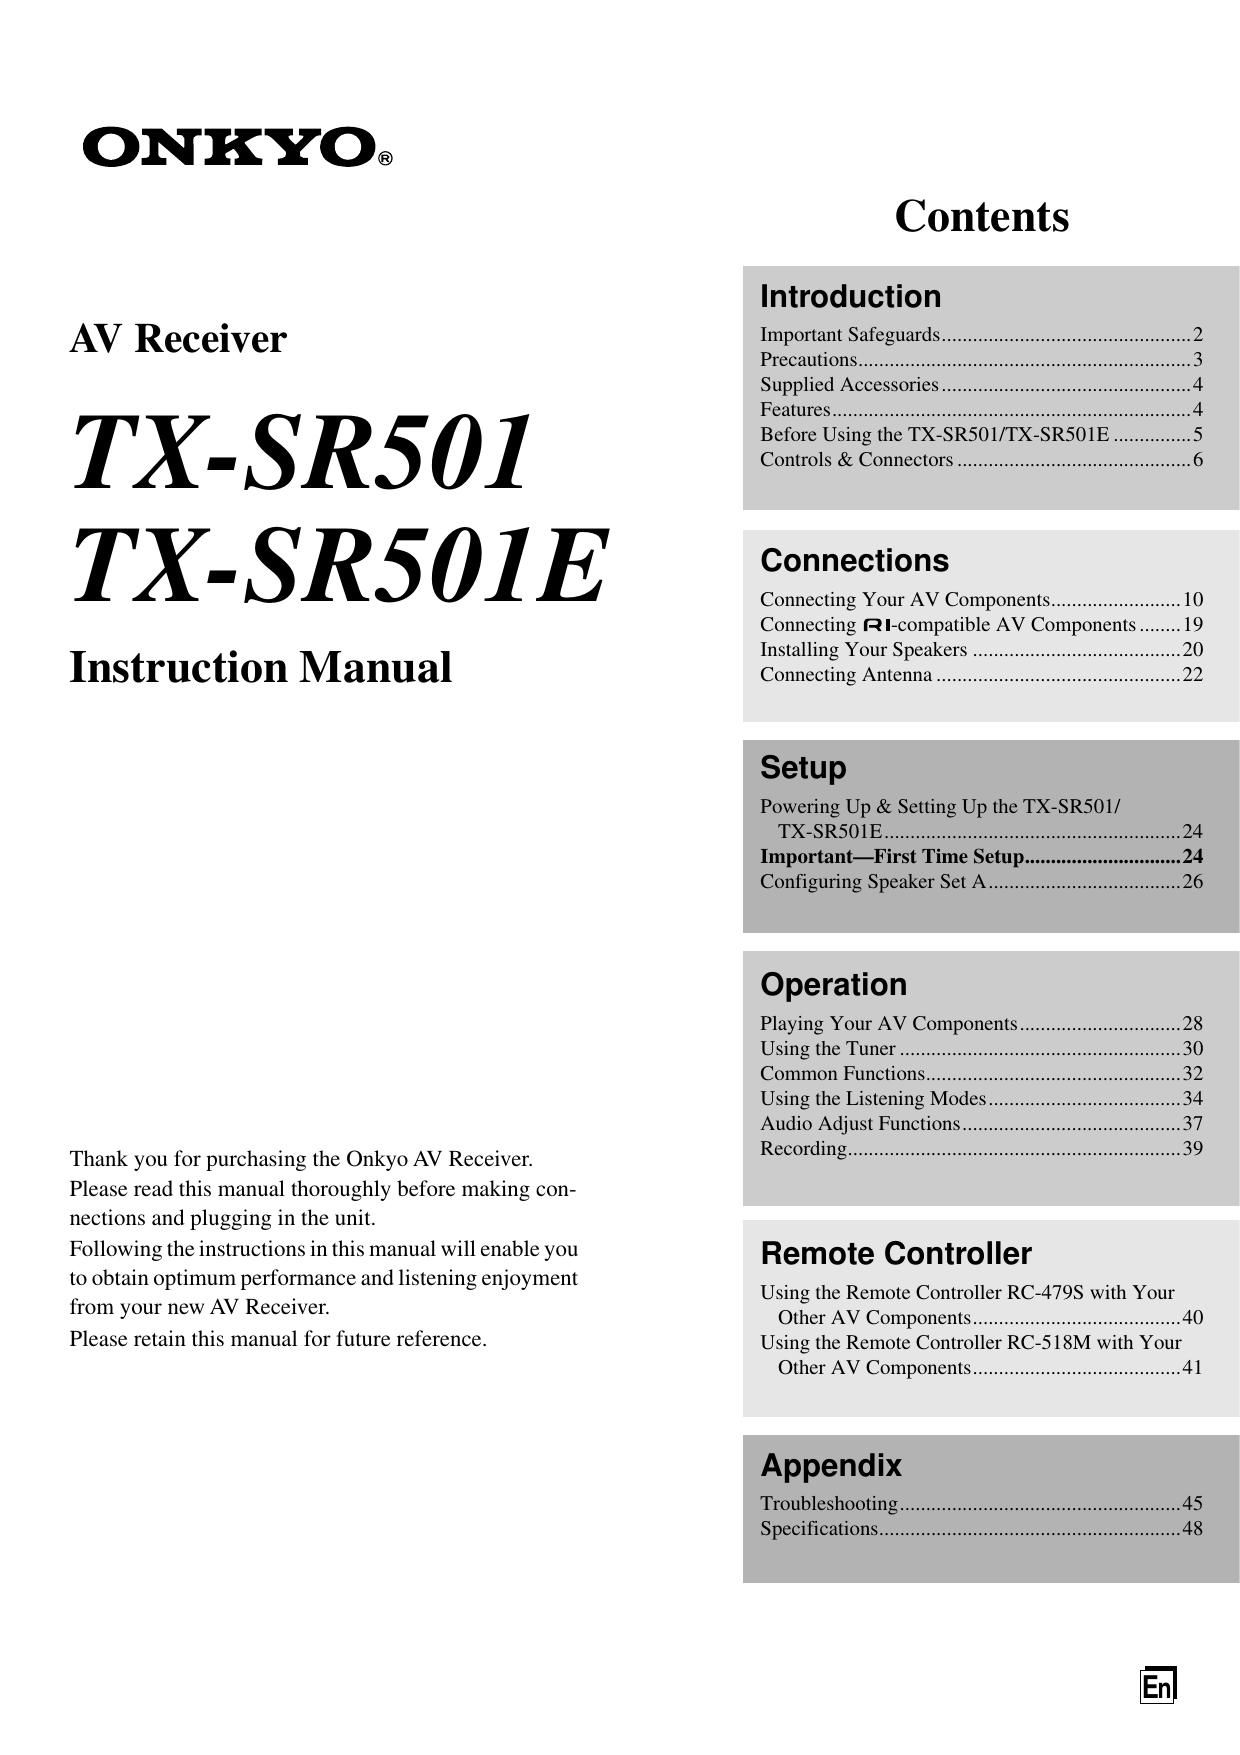 Onkyo TXSR 501 Owners Manual